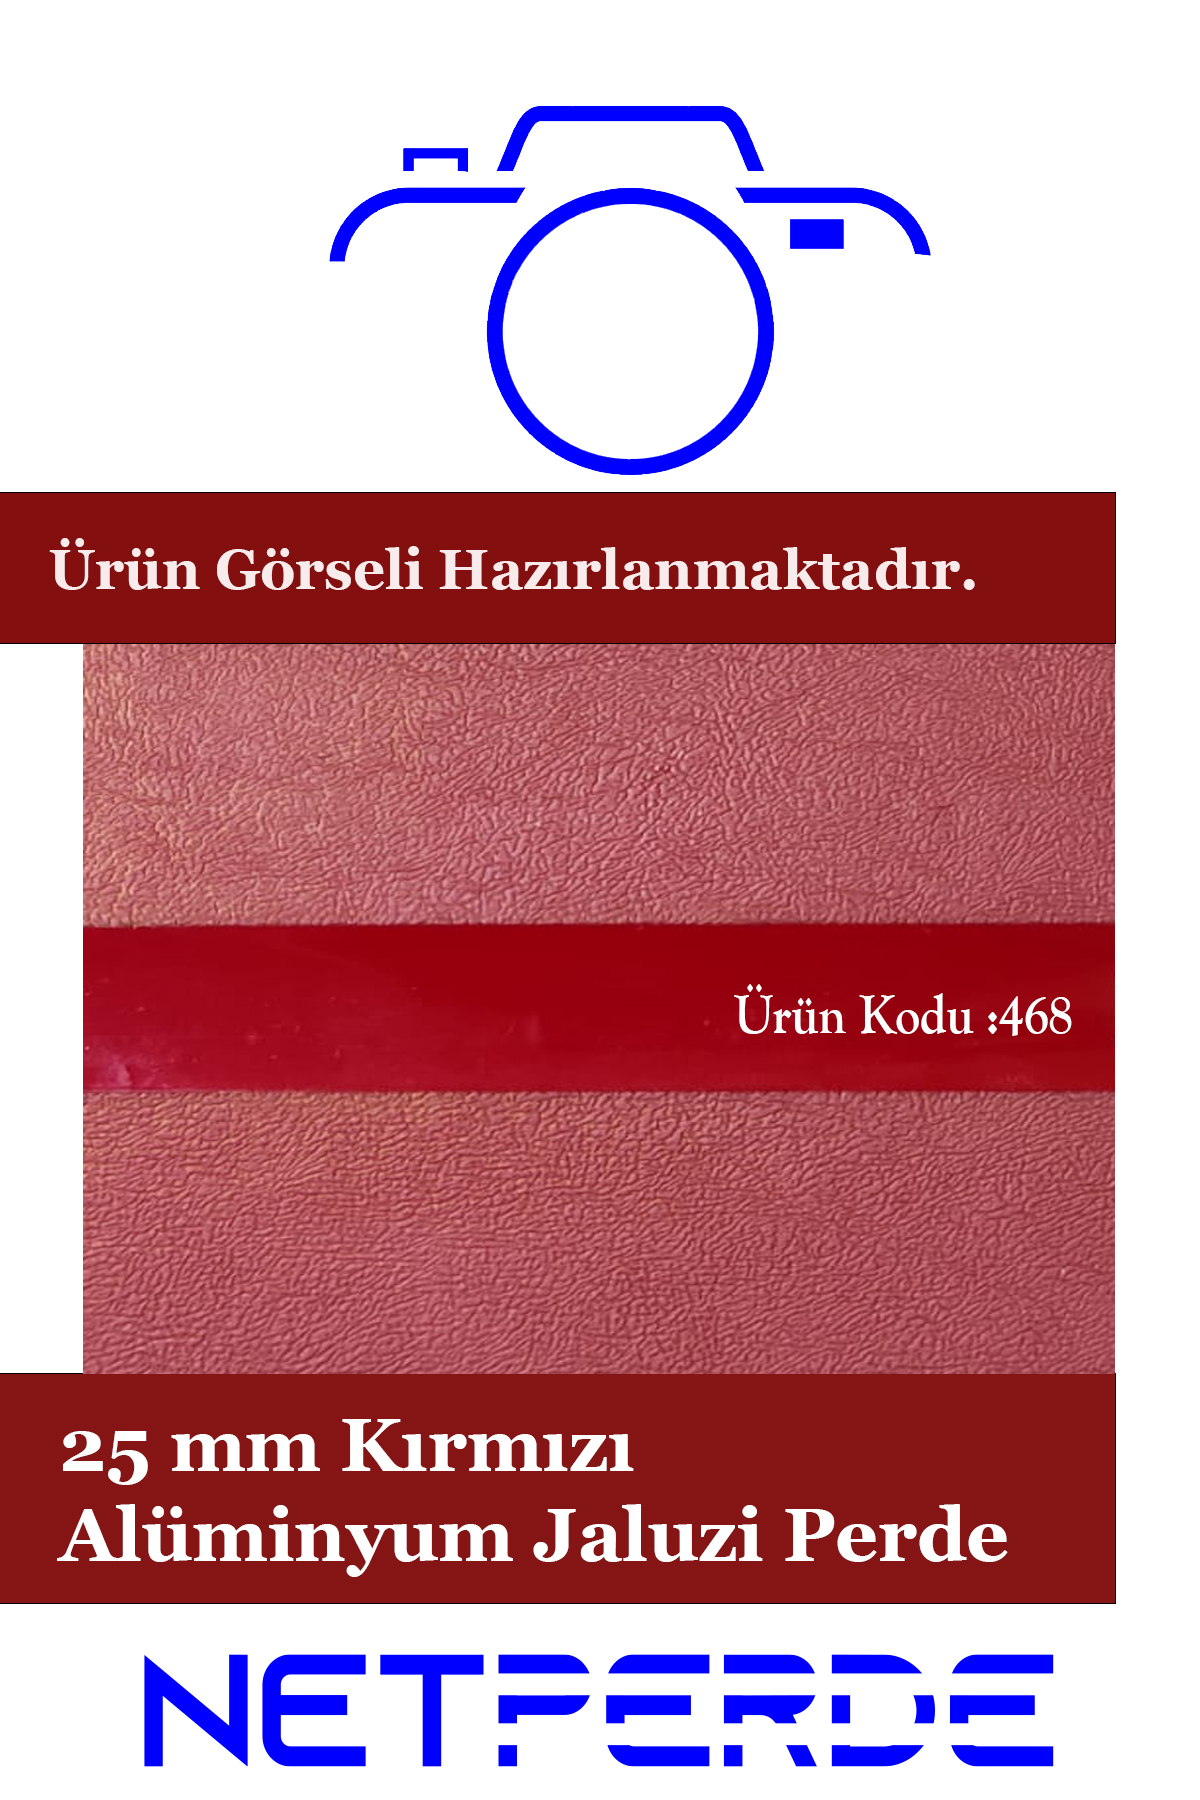 25 mm kırmızı alüminyum jaluzi perde